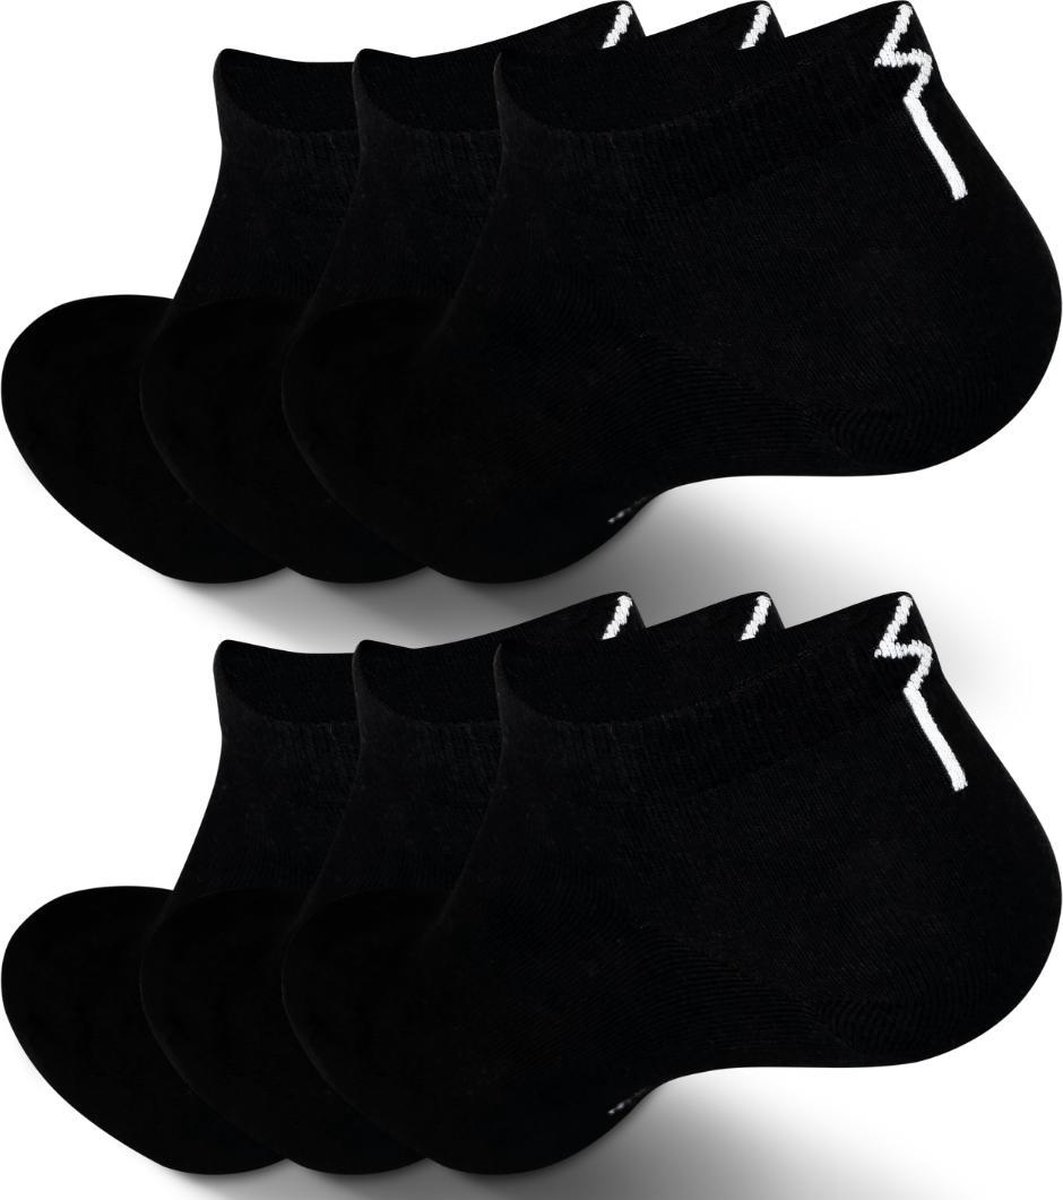 Enkelsokken die niet afzakken - Maat 39-42 - voor Dames en Heren - Naadloze sokken - Sneakersokken Dames en Heren - Sokken